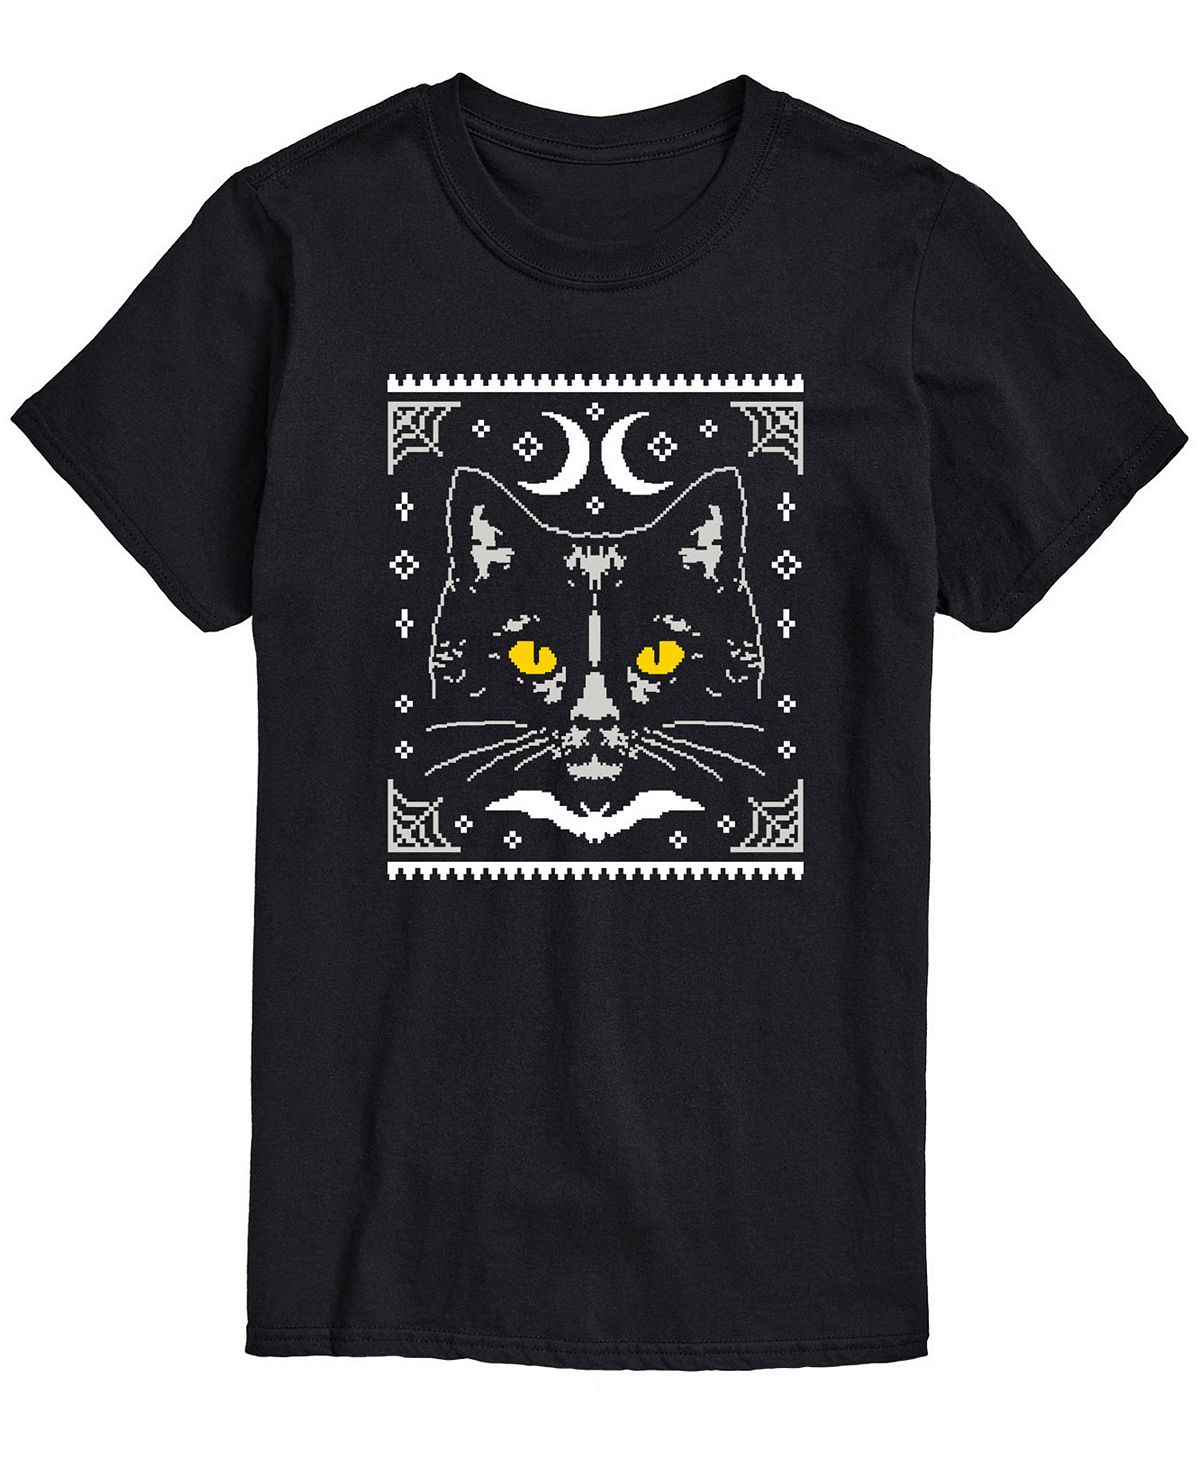 Мужская футболка классического кроя «Хэллоуин с котом» AIRWAVES